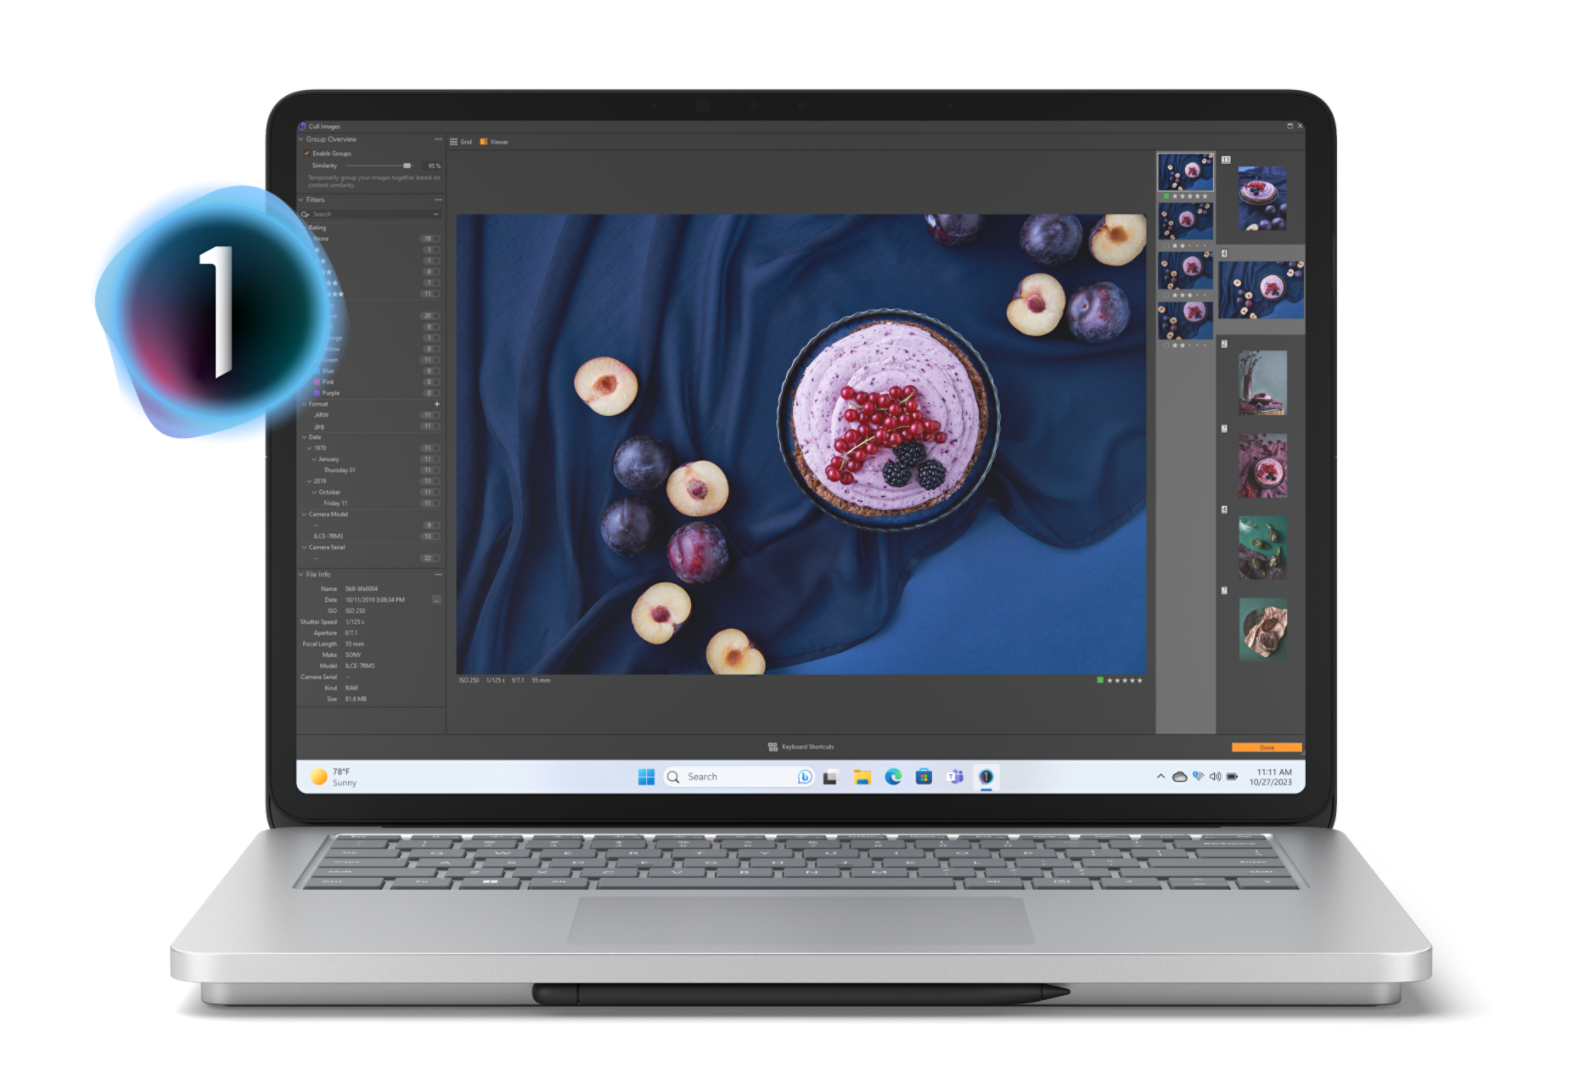 Zařízení Surface Laptop Studio 2 zobrazující na své obrazovce ovocný koláč se zralými švestkami na tmavě modrém ubrusu s položkami nabídky aplikace Capture One, které vystupují z obrazovky.